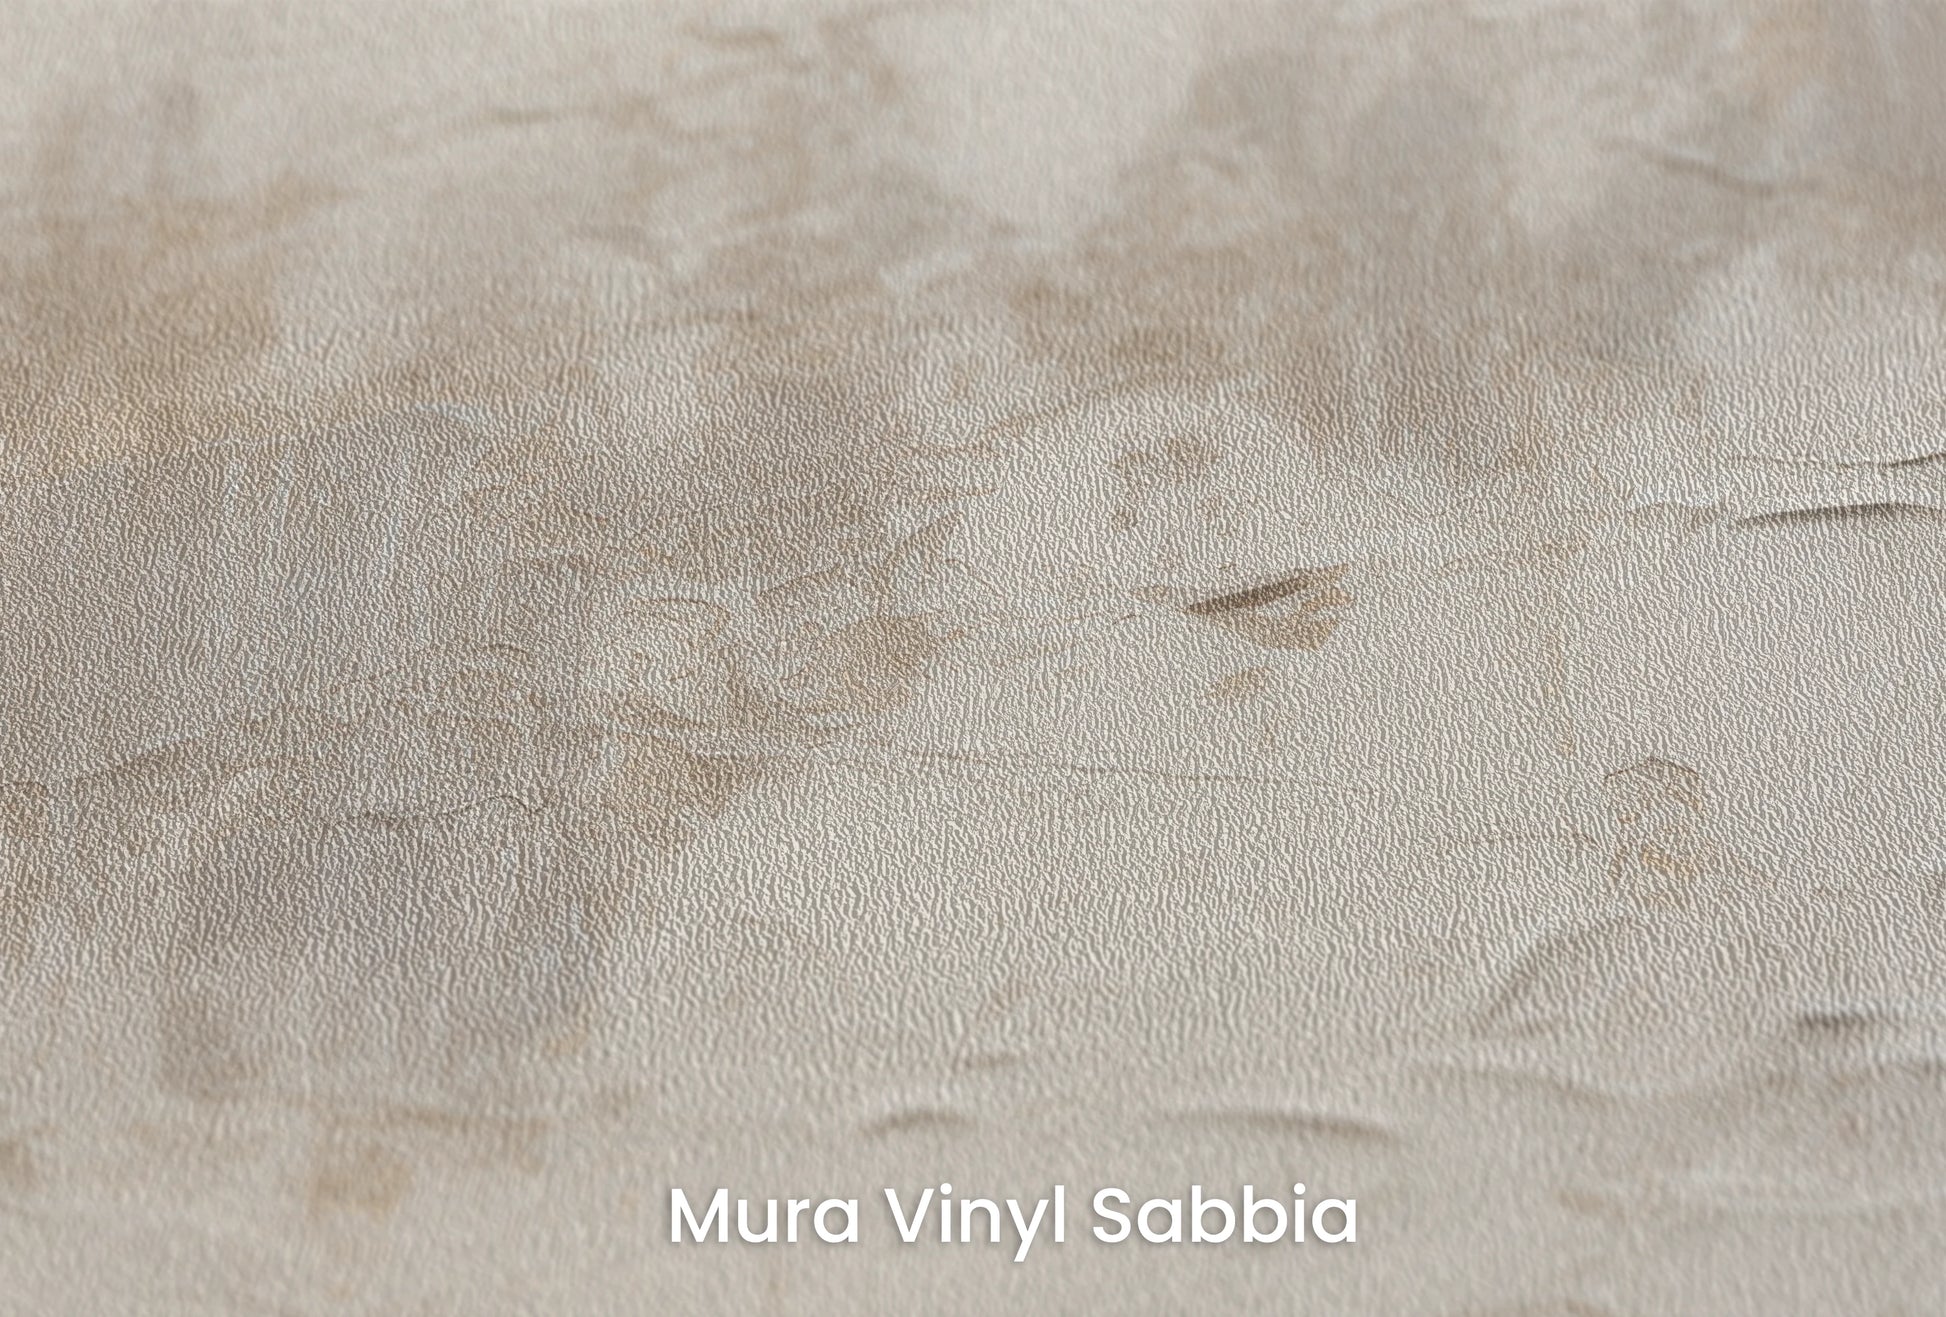 Zbliżenie na artystyczną fototapetę o nazwie Tonal Tranquility na podłożu Mura Vinyl Sabbia struktura grubego ziarna piasku.